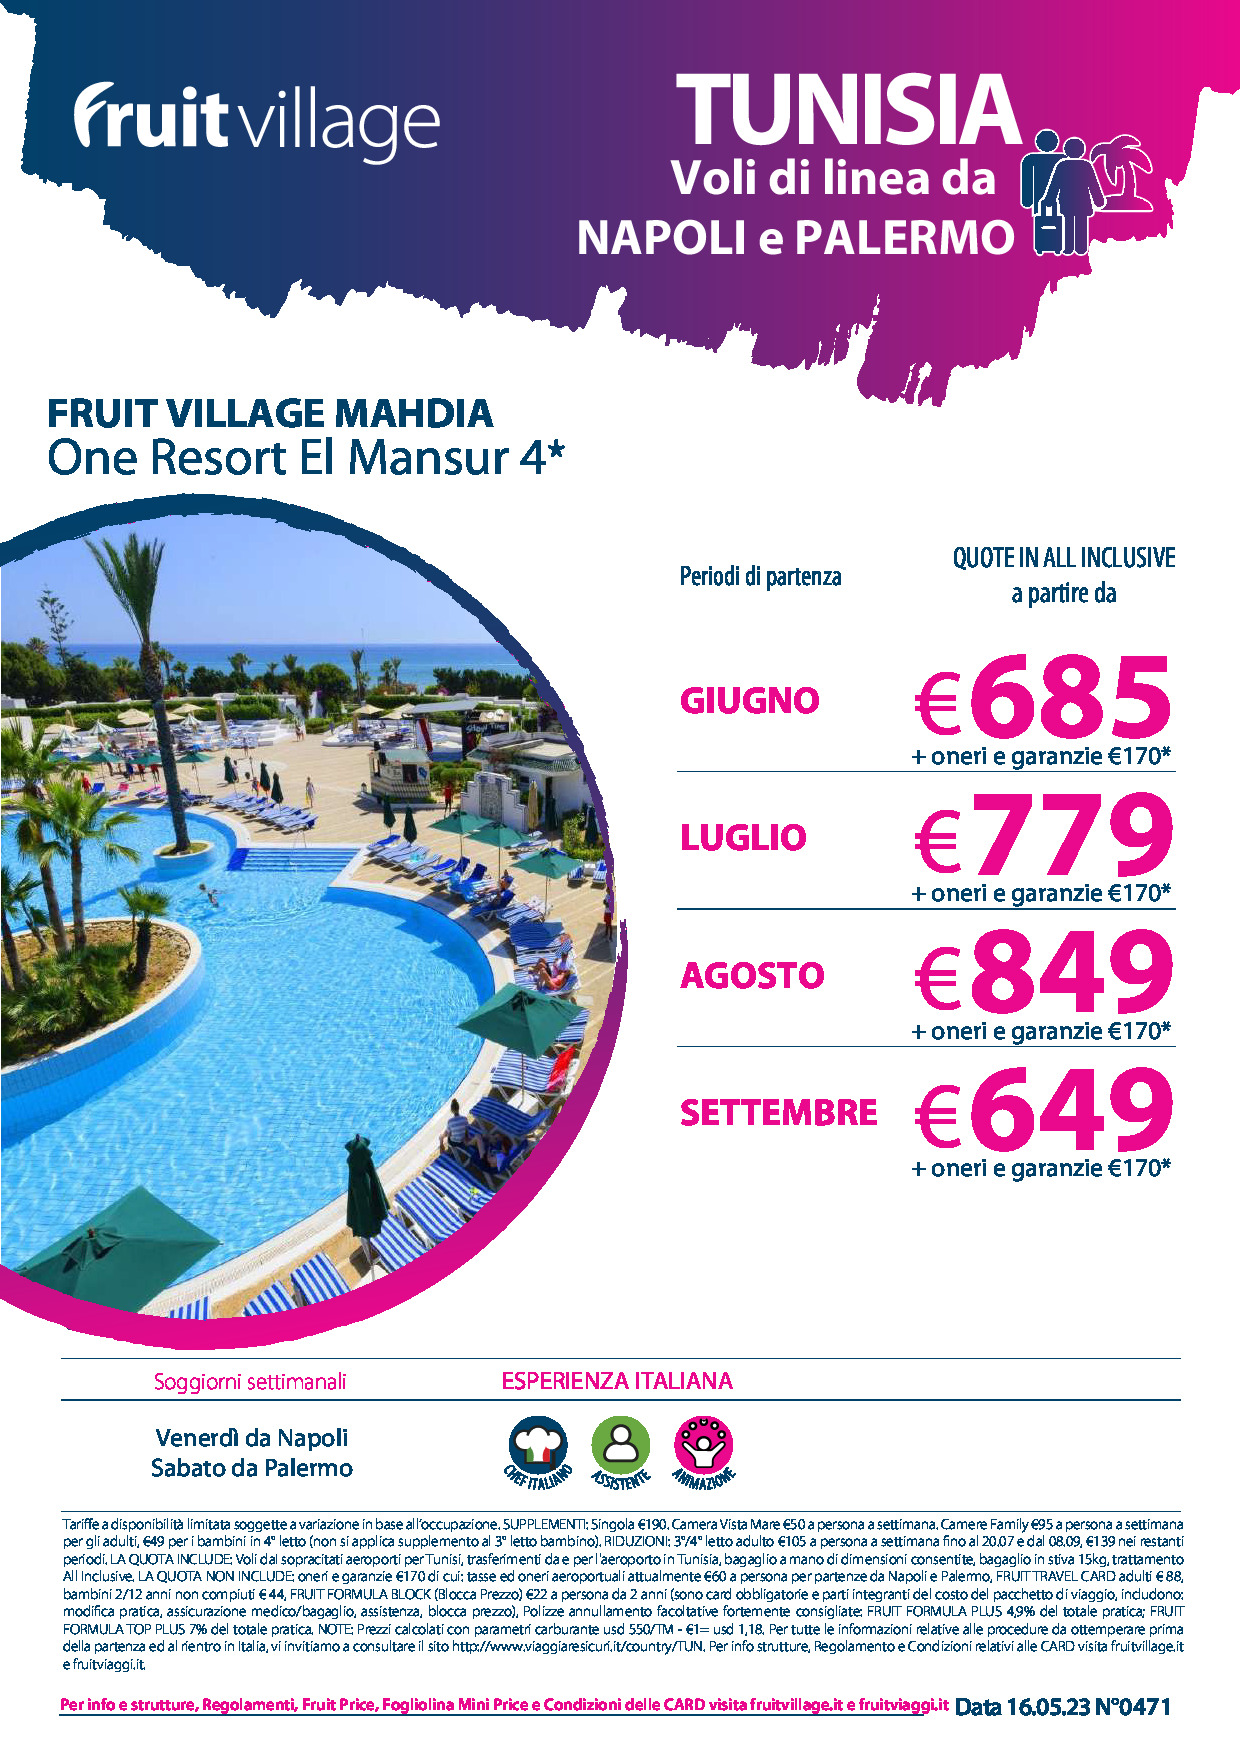 FRUIT VILLAGE Mahdia One Resort El Mansour con voli di linea da Napoli e Palermo